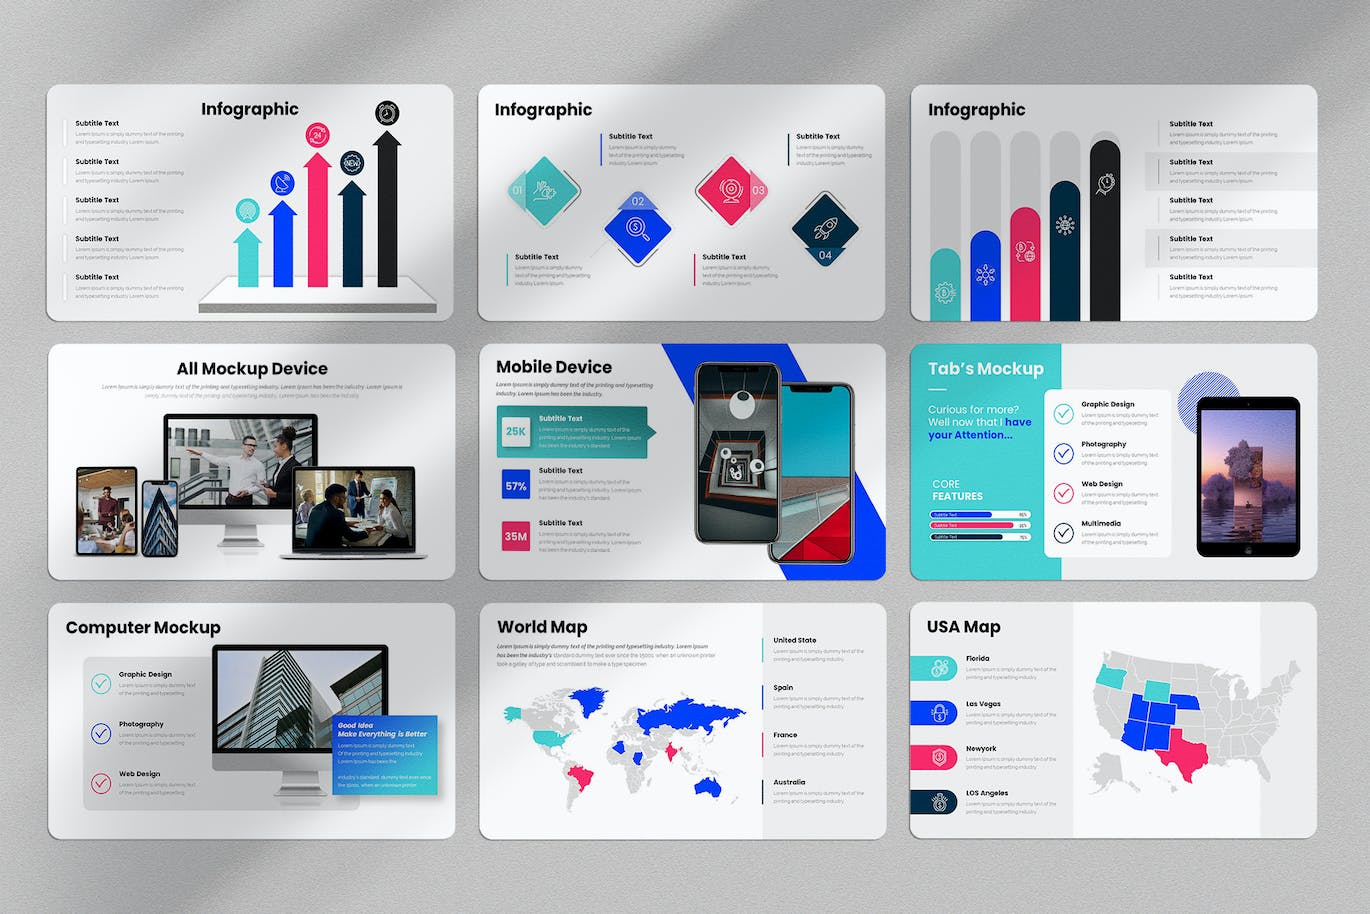 商业计划方案谷歌幻灯片演示文稿模板 Business Plan Google Slides Presentation Template 幻灯图表 第6张